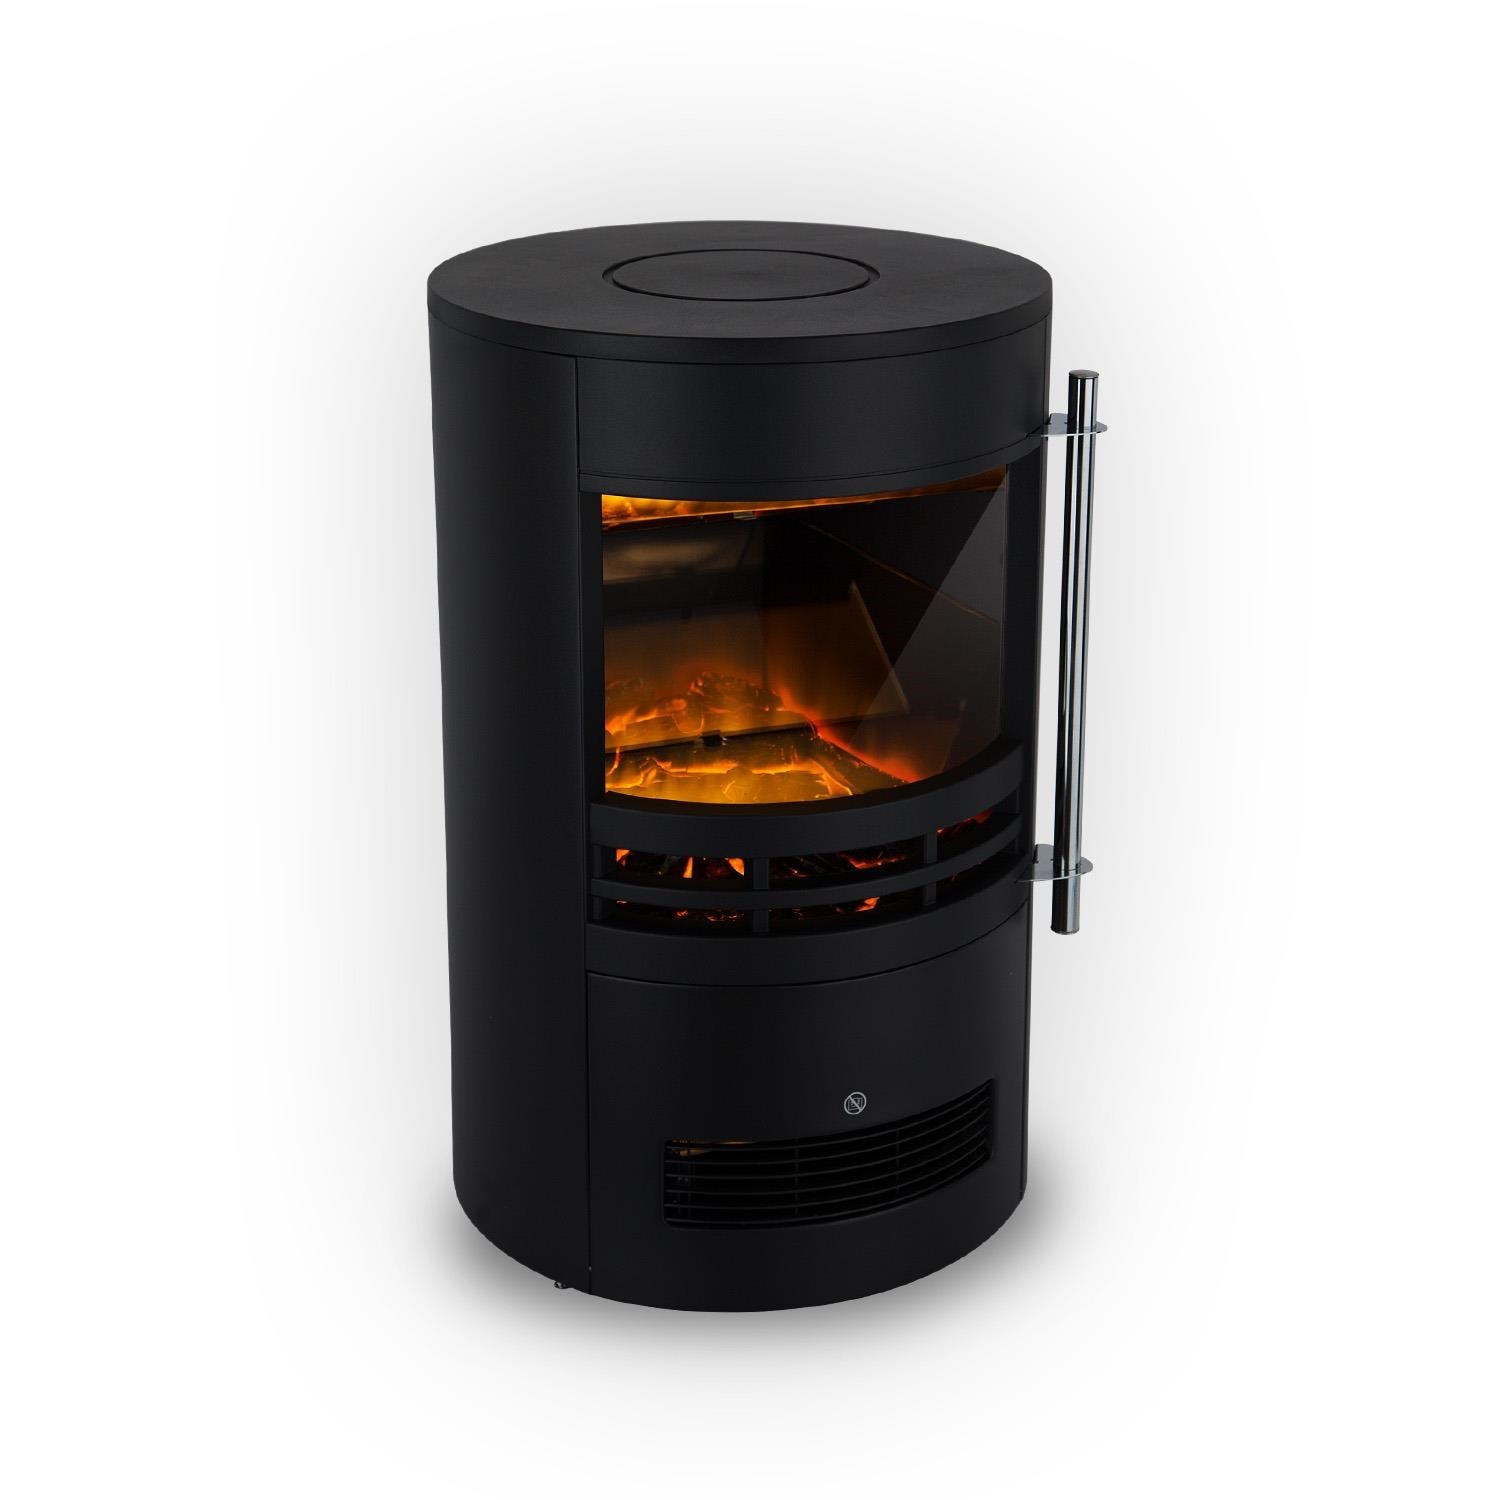 Klarstein brixen cheminée électrique effet flammes 3d - chauffage réglable  900w / 1800w - noir KLARSTEIN